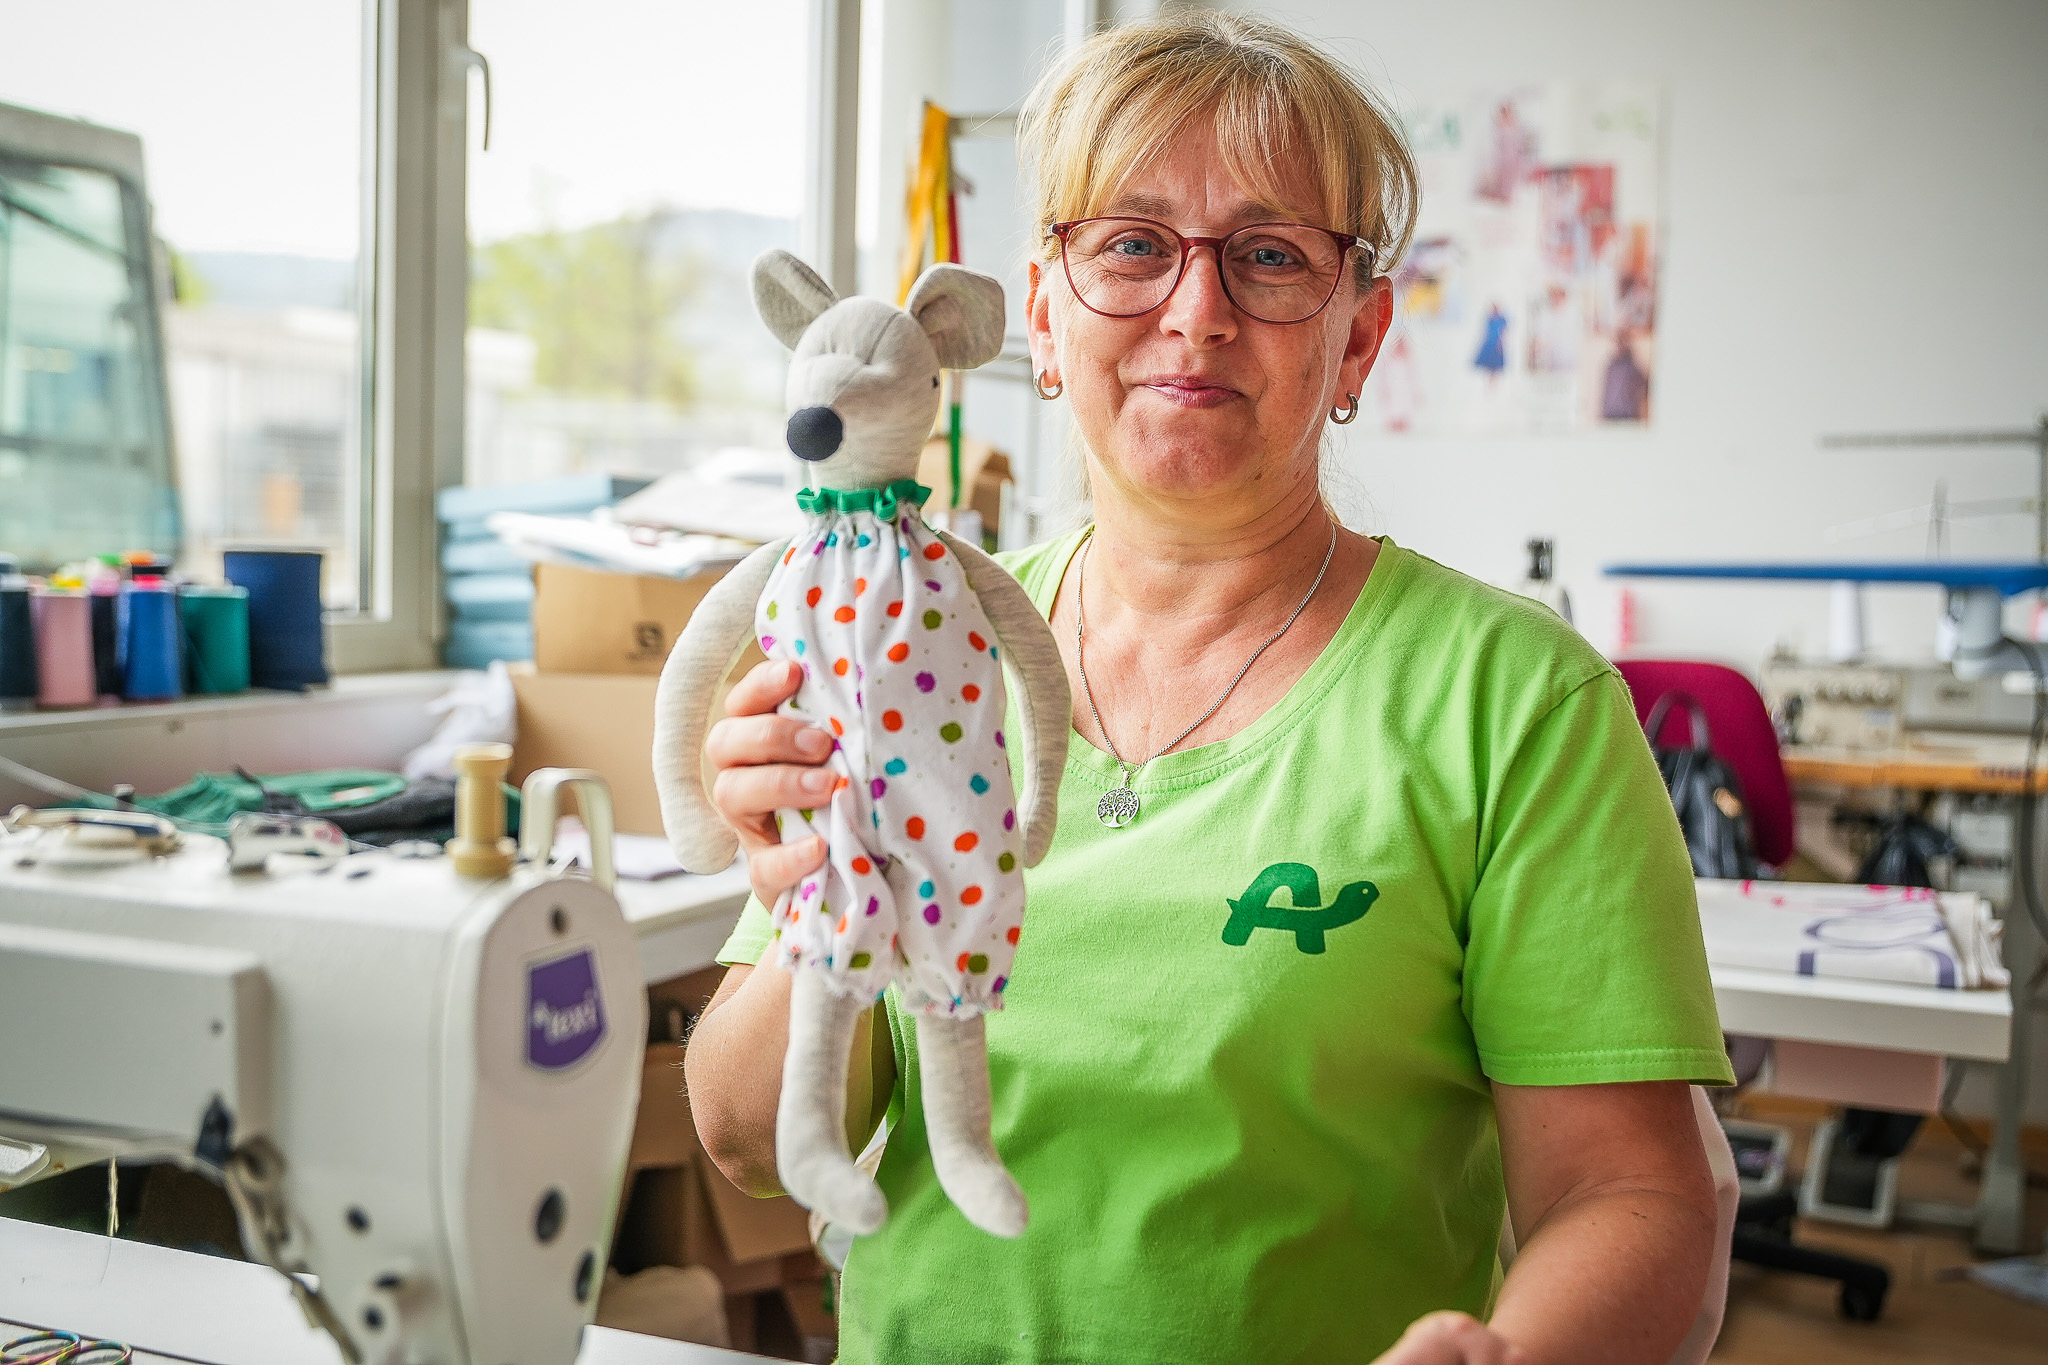 Delavka za šivalnim strojem v roki drži igračko iz blaga in predstavlja Želvin krog vključevanja.